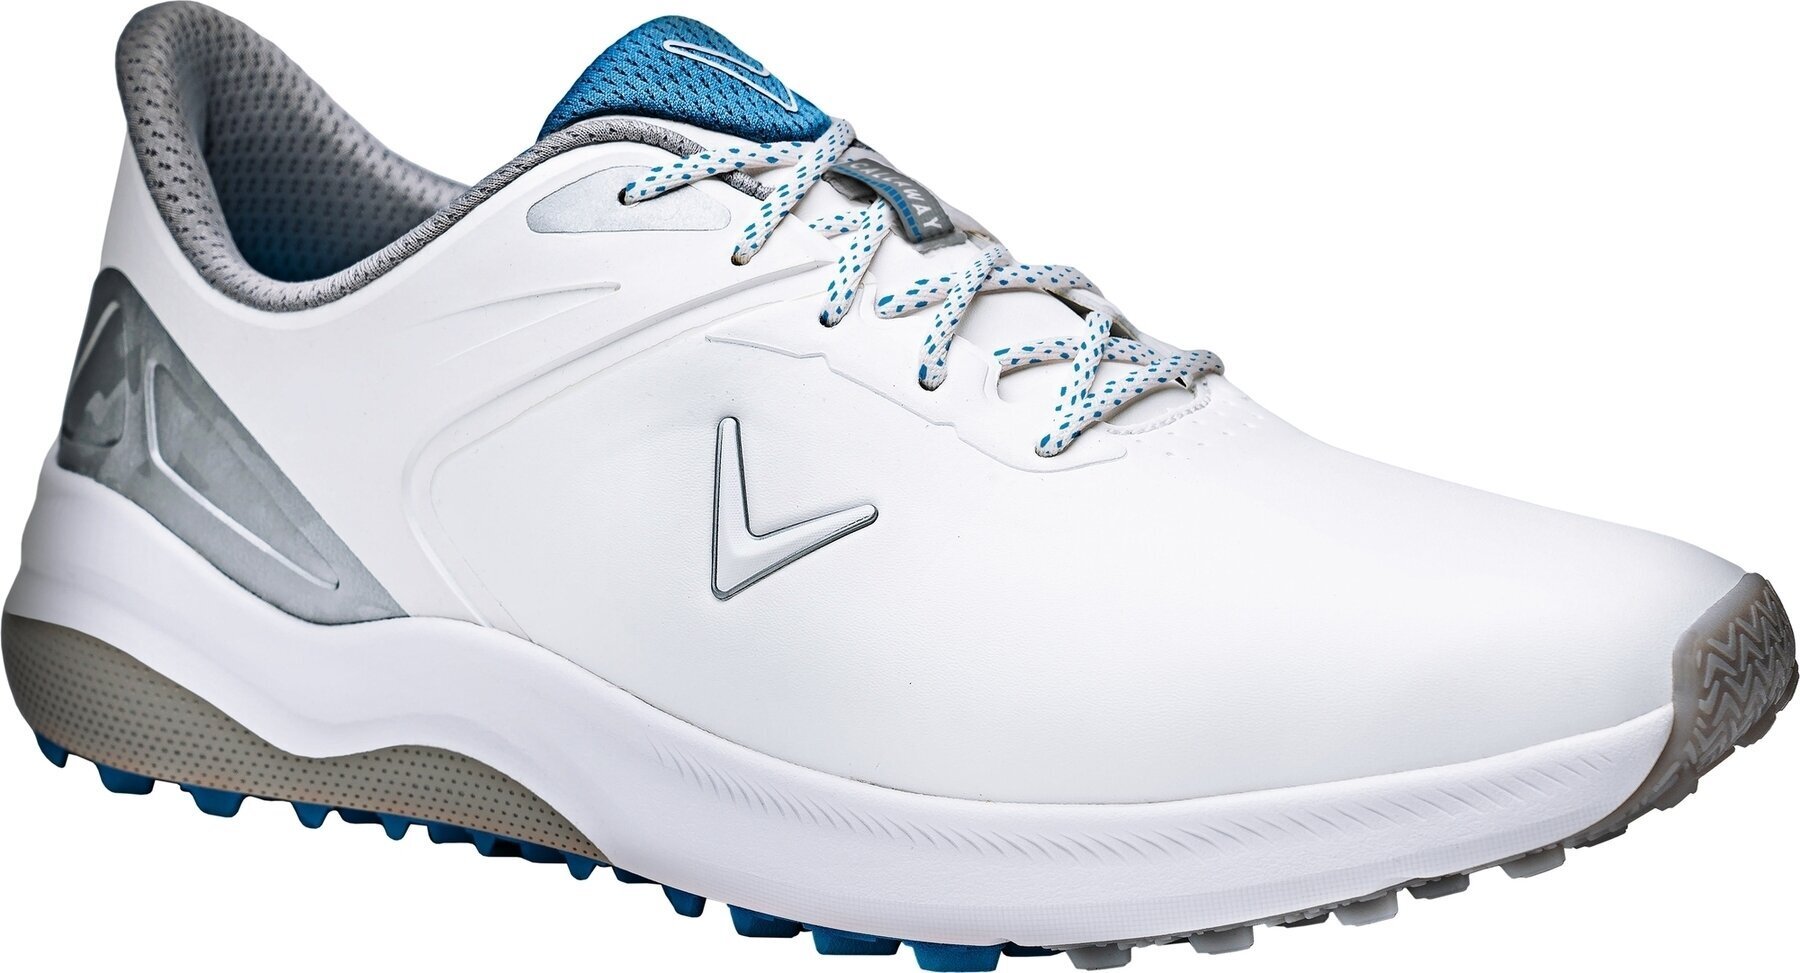 Golfsko til mænd Callaway Lazer Mens Golf Shoes White/Silver 41